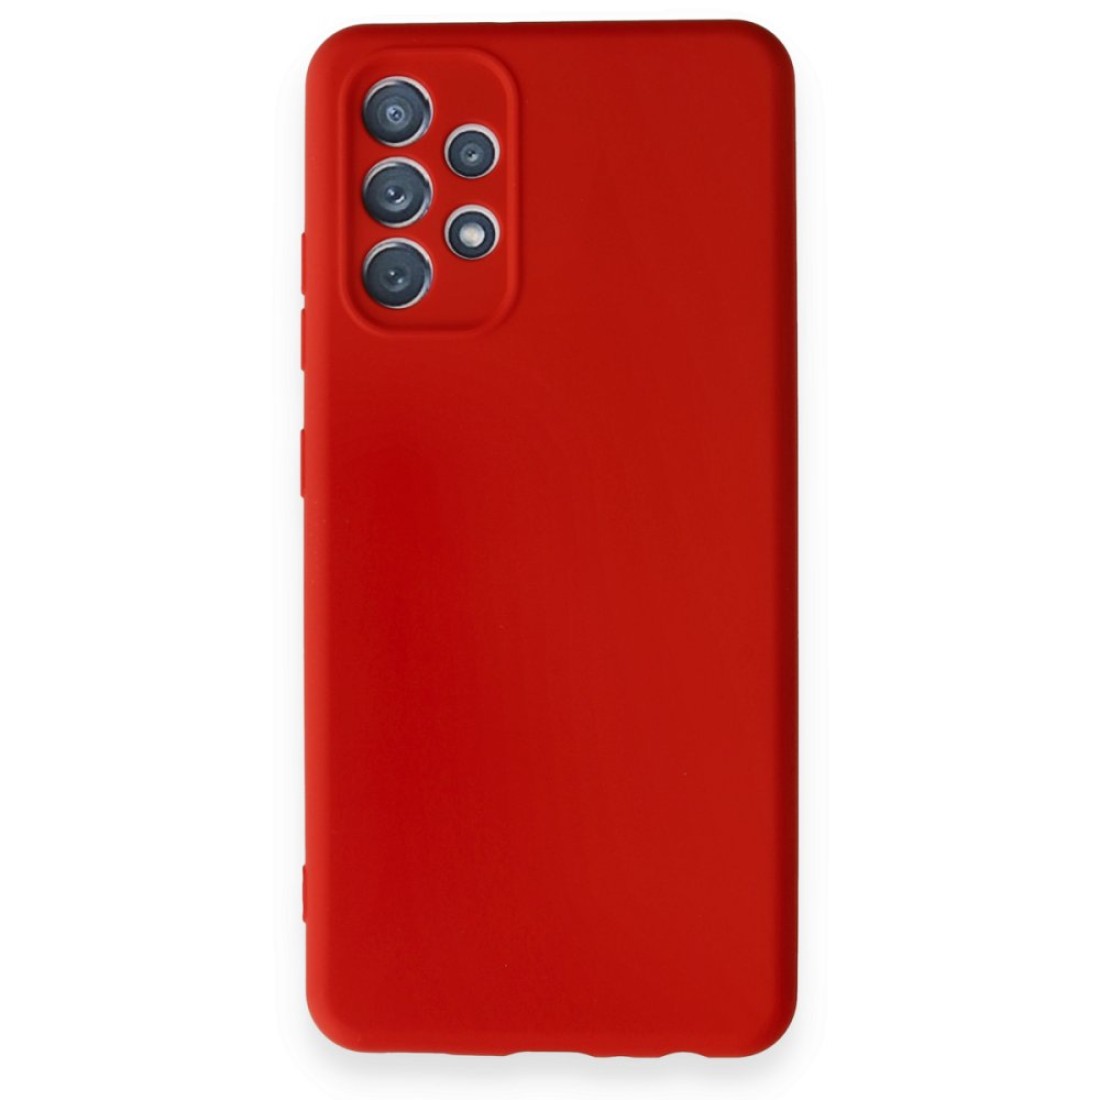 Samsung Galaxy A32 Kılıf First Silikon - Kırmızı